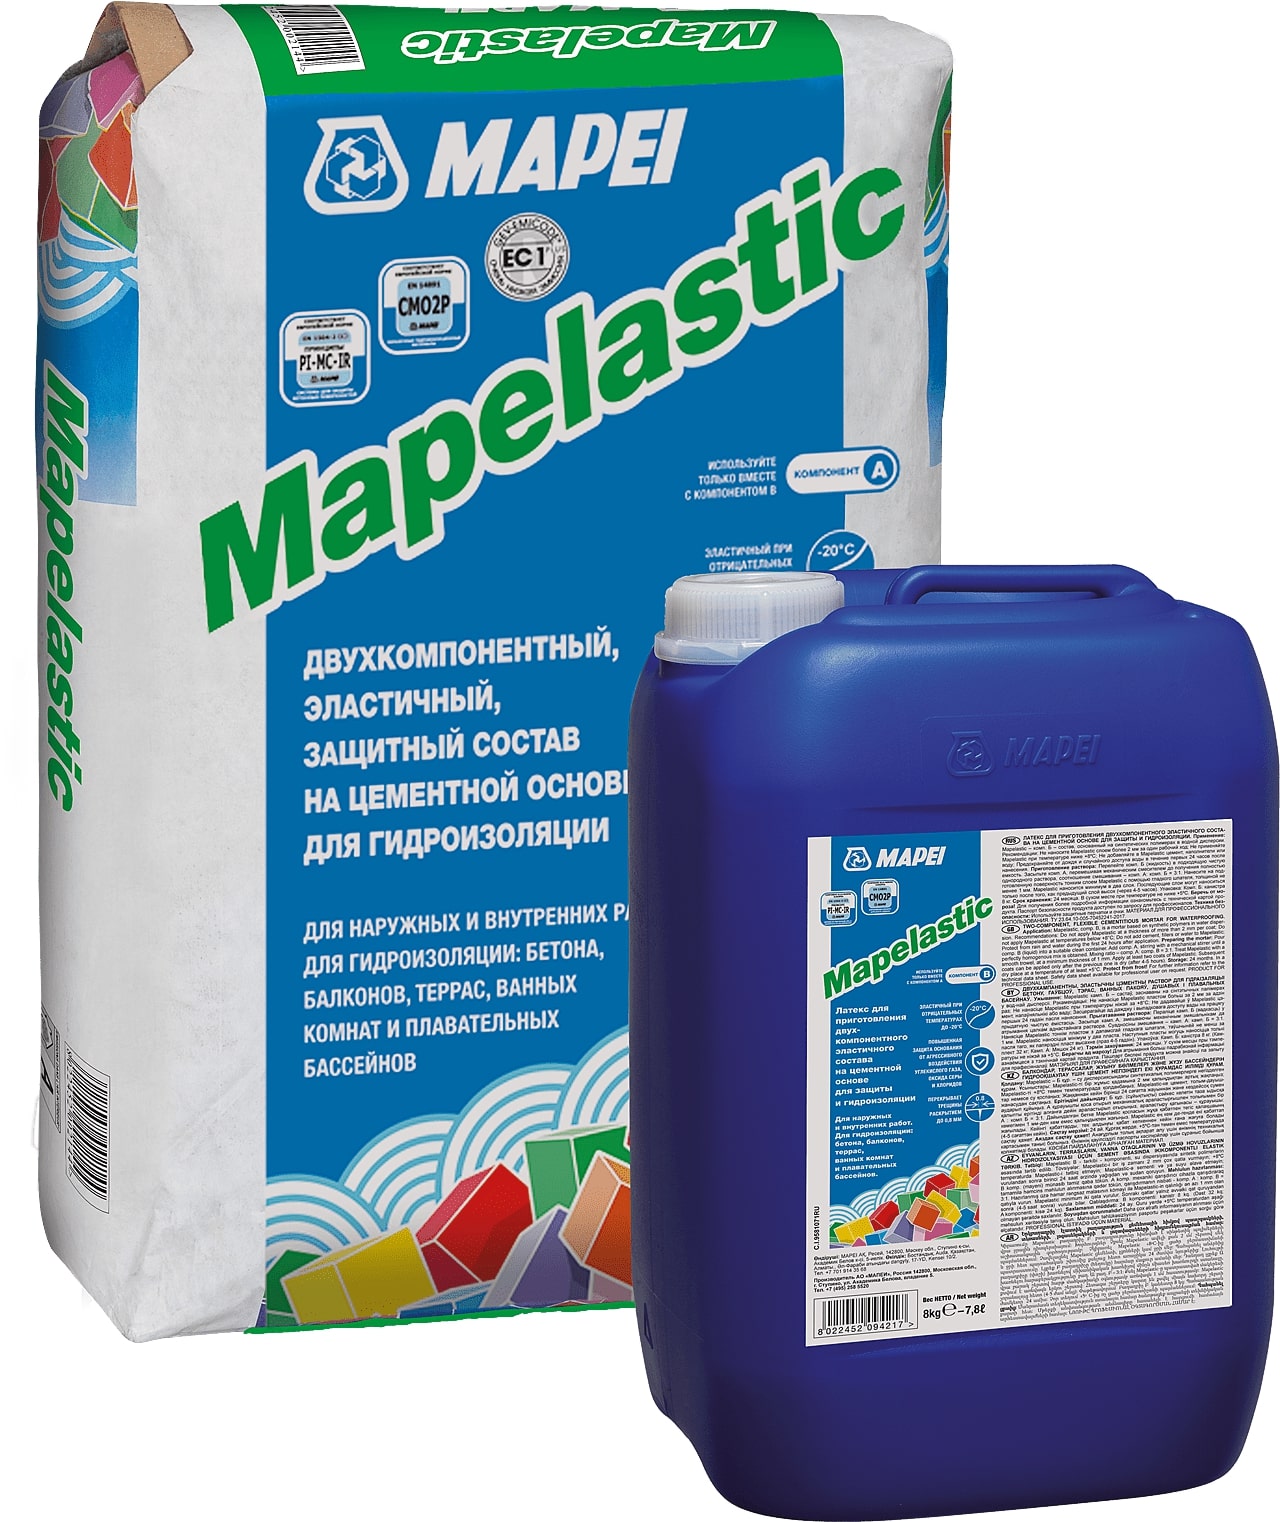 Жидкость для гидроизоляции Mapei Mapelastic /В 8кг